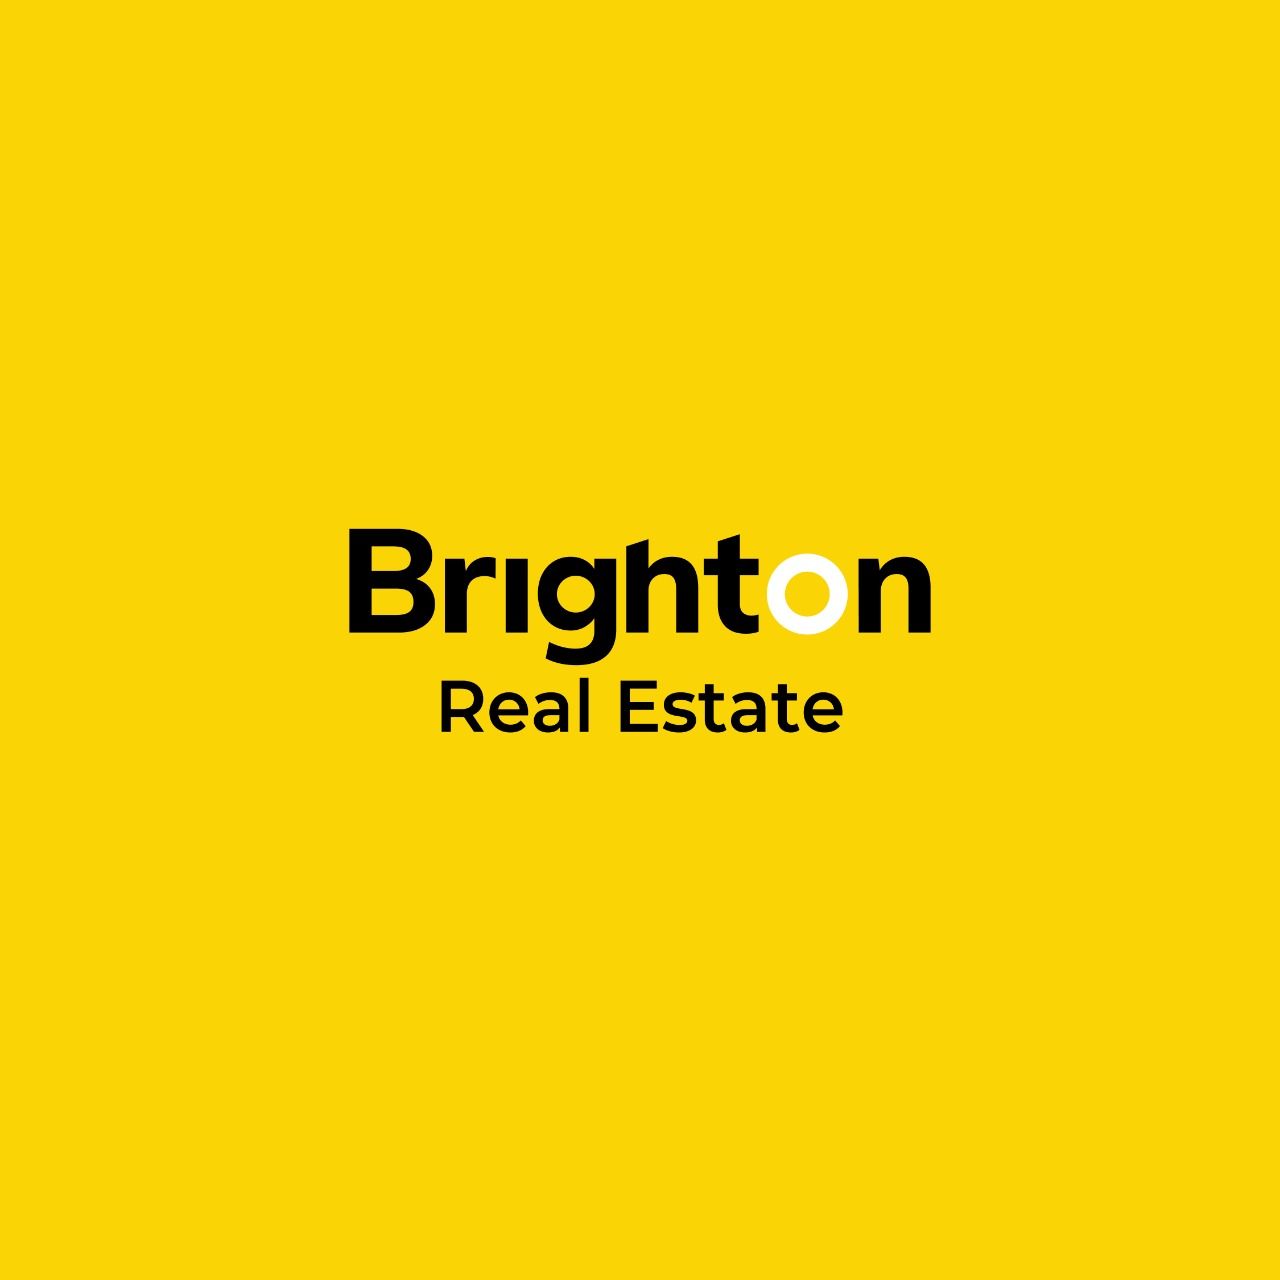 Lowongan Kerja Brighton Real Estate Terbaru